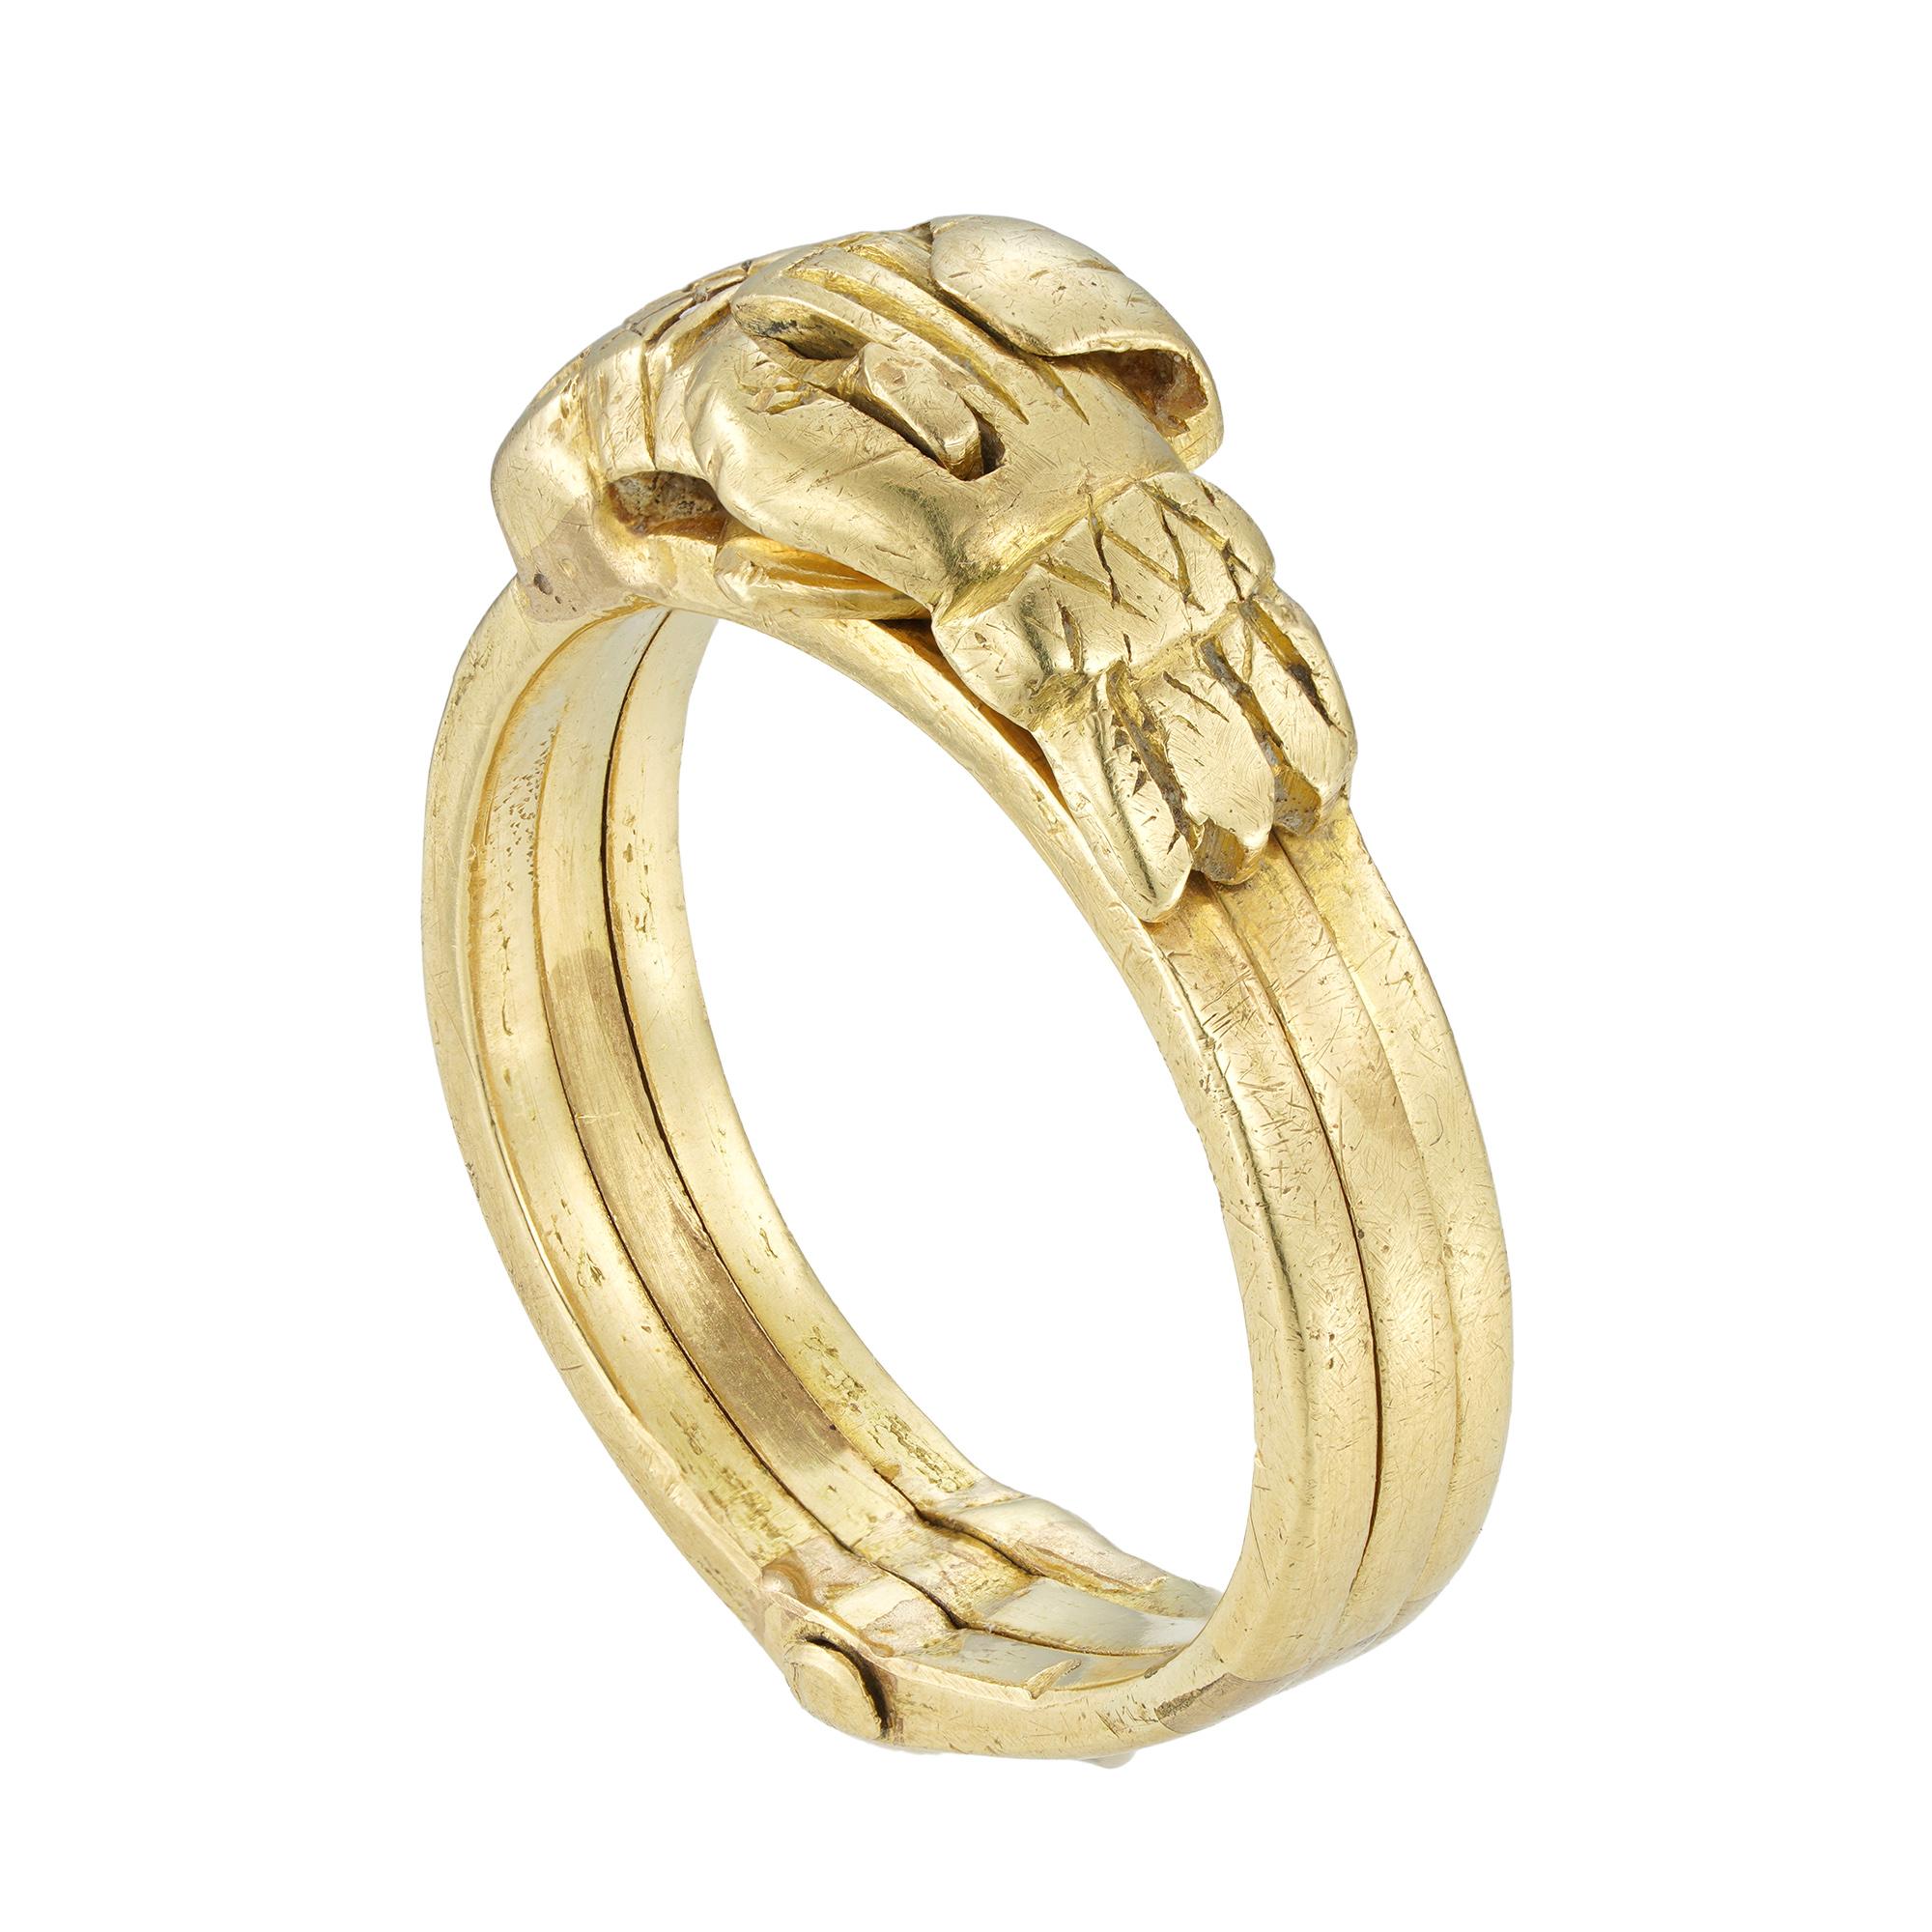 Ein goldener Gimmelring aus dem 18. Jahrhundert, bestehend aus drei separaten Ringen, die so miteinander verbunden sind, dass sie unbemerkt als ein Ring zusammenpassen, verziert mit zwei ineinandergreifenden Händen, die auseinandergezogen werden, um